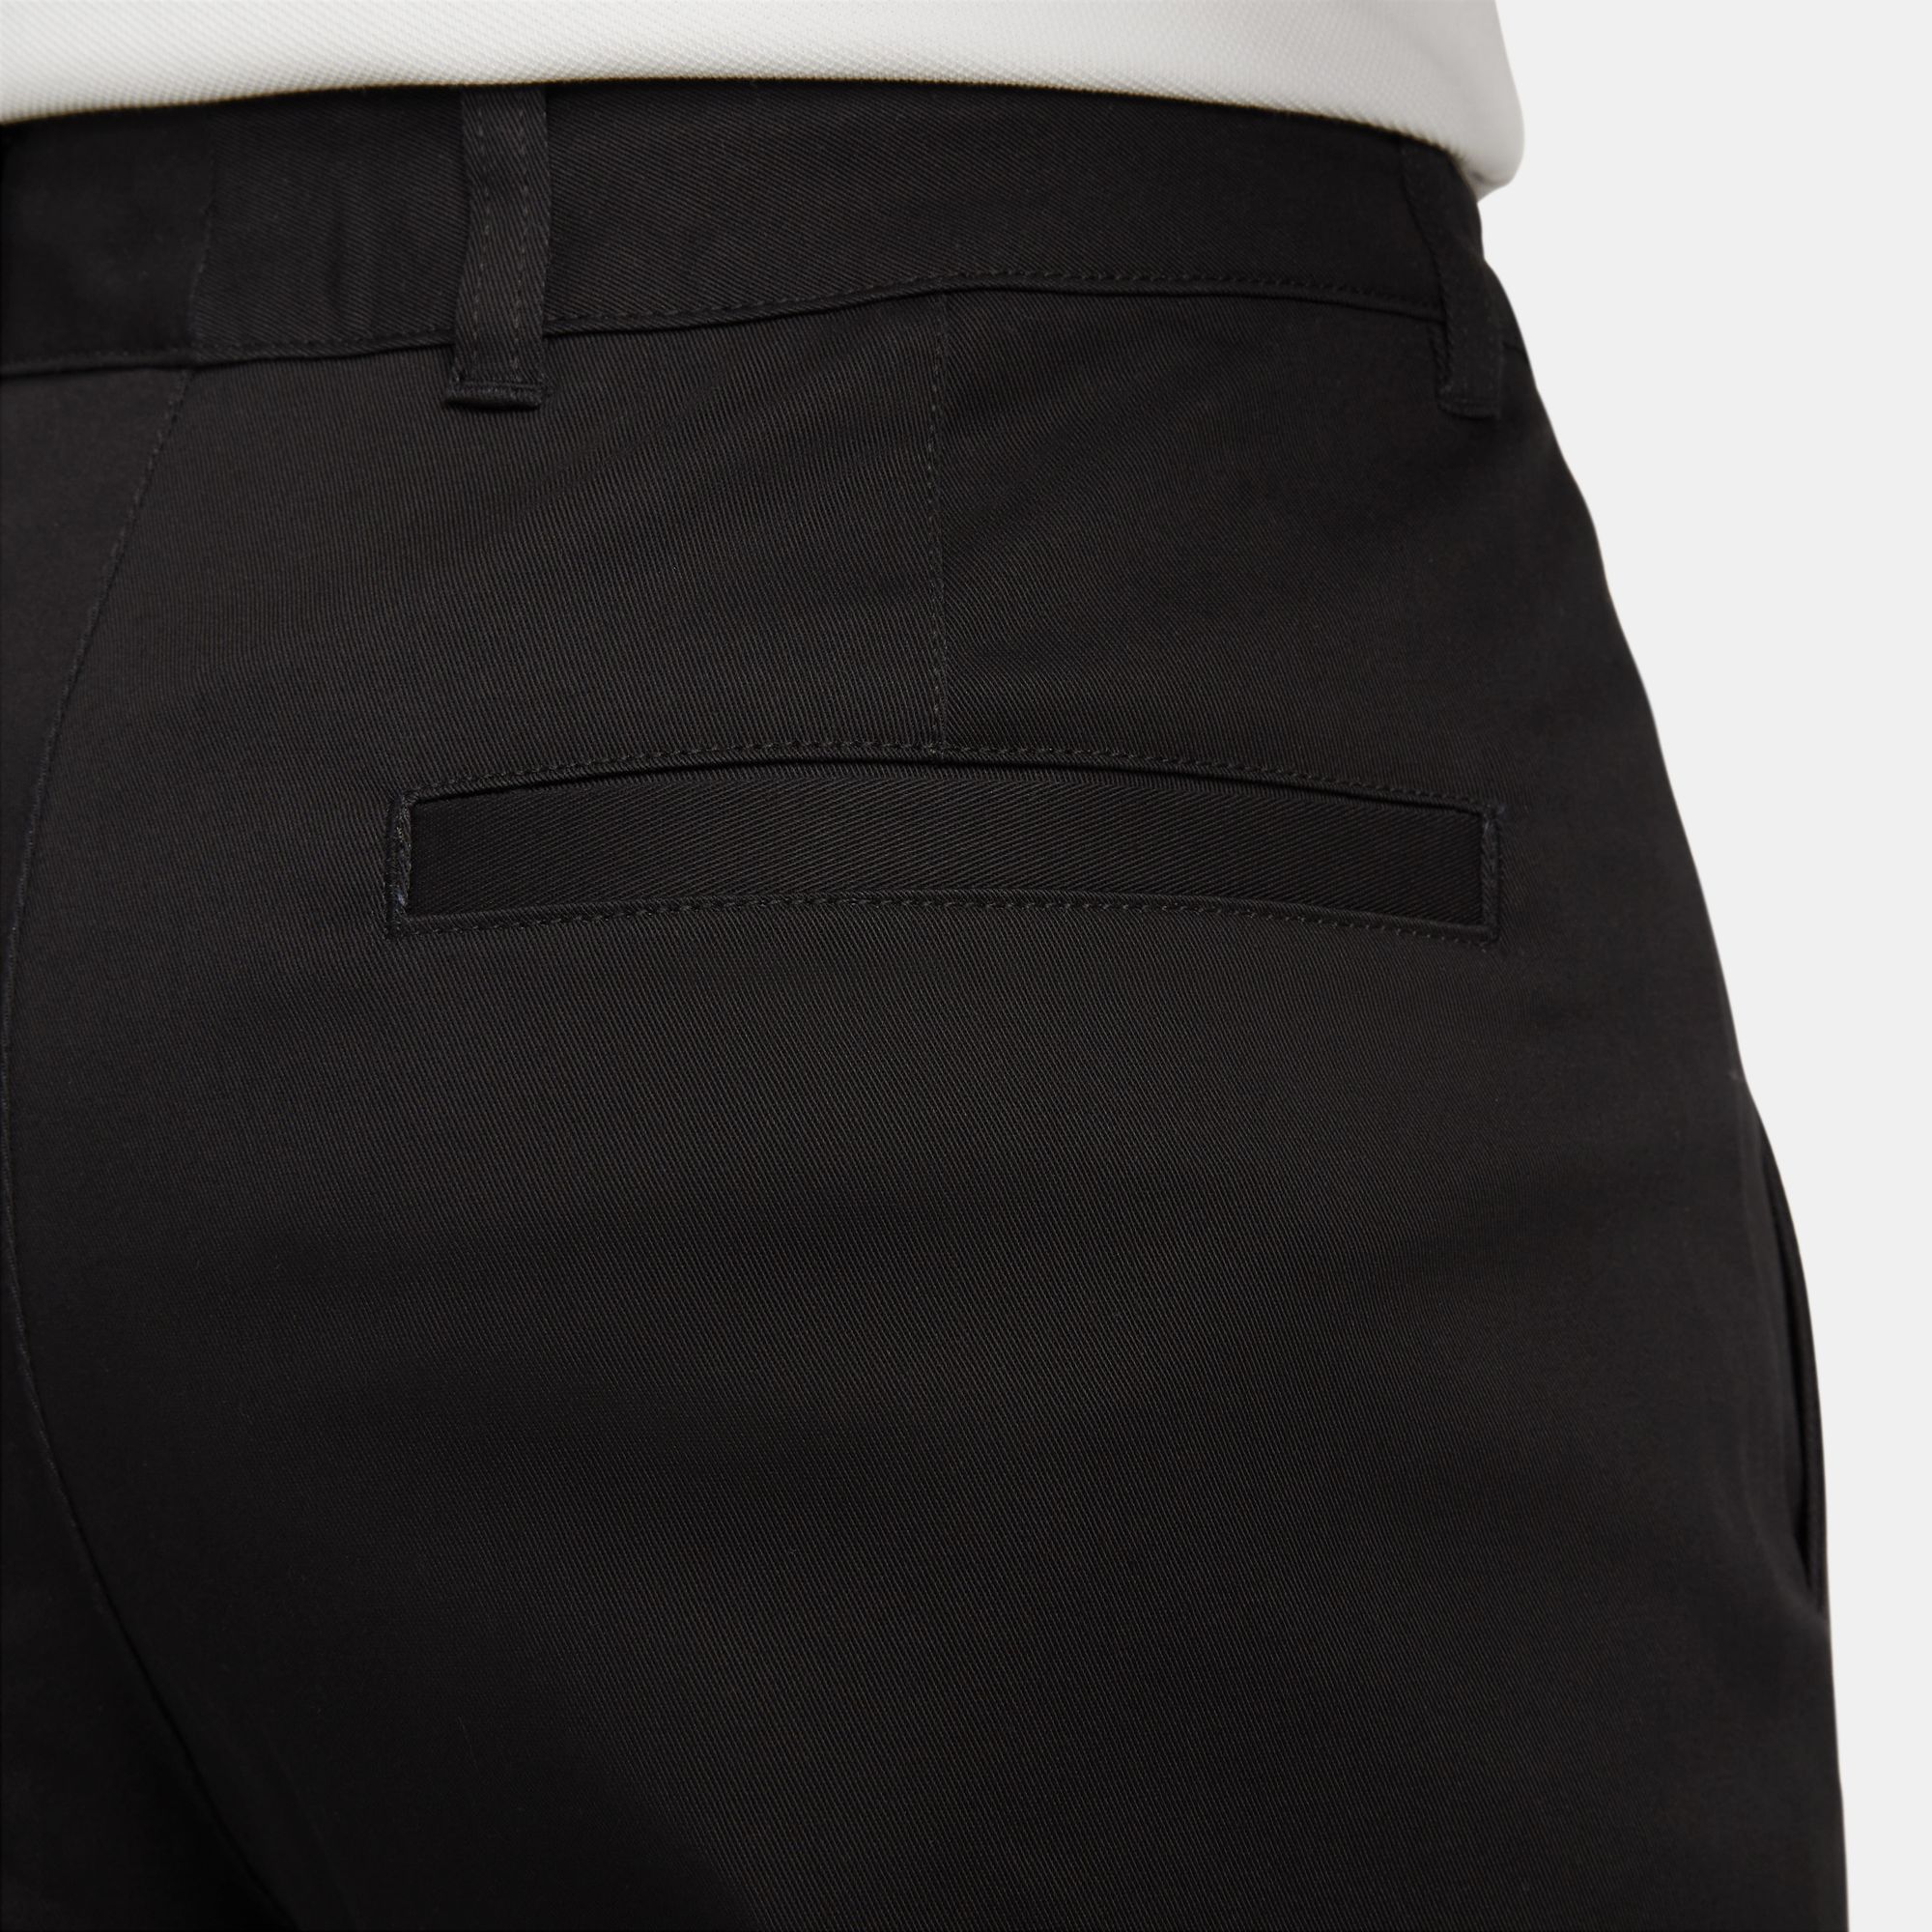 Nike SB Men's Unlined Cotton Chino Pants Black 04